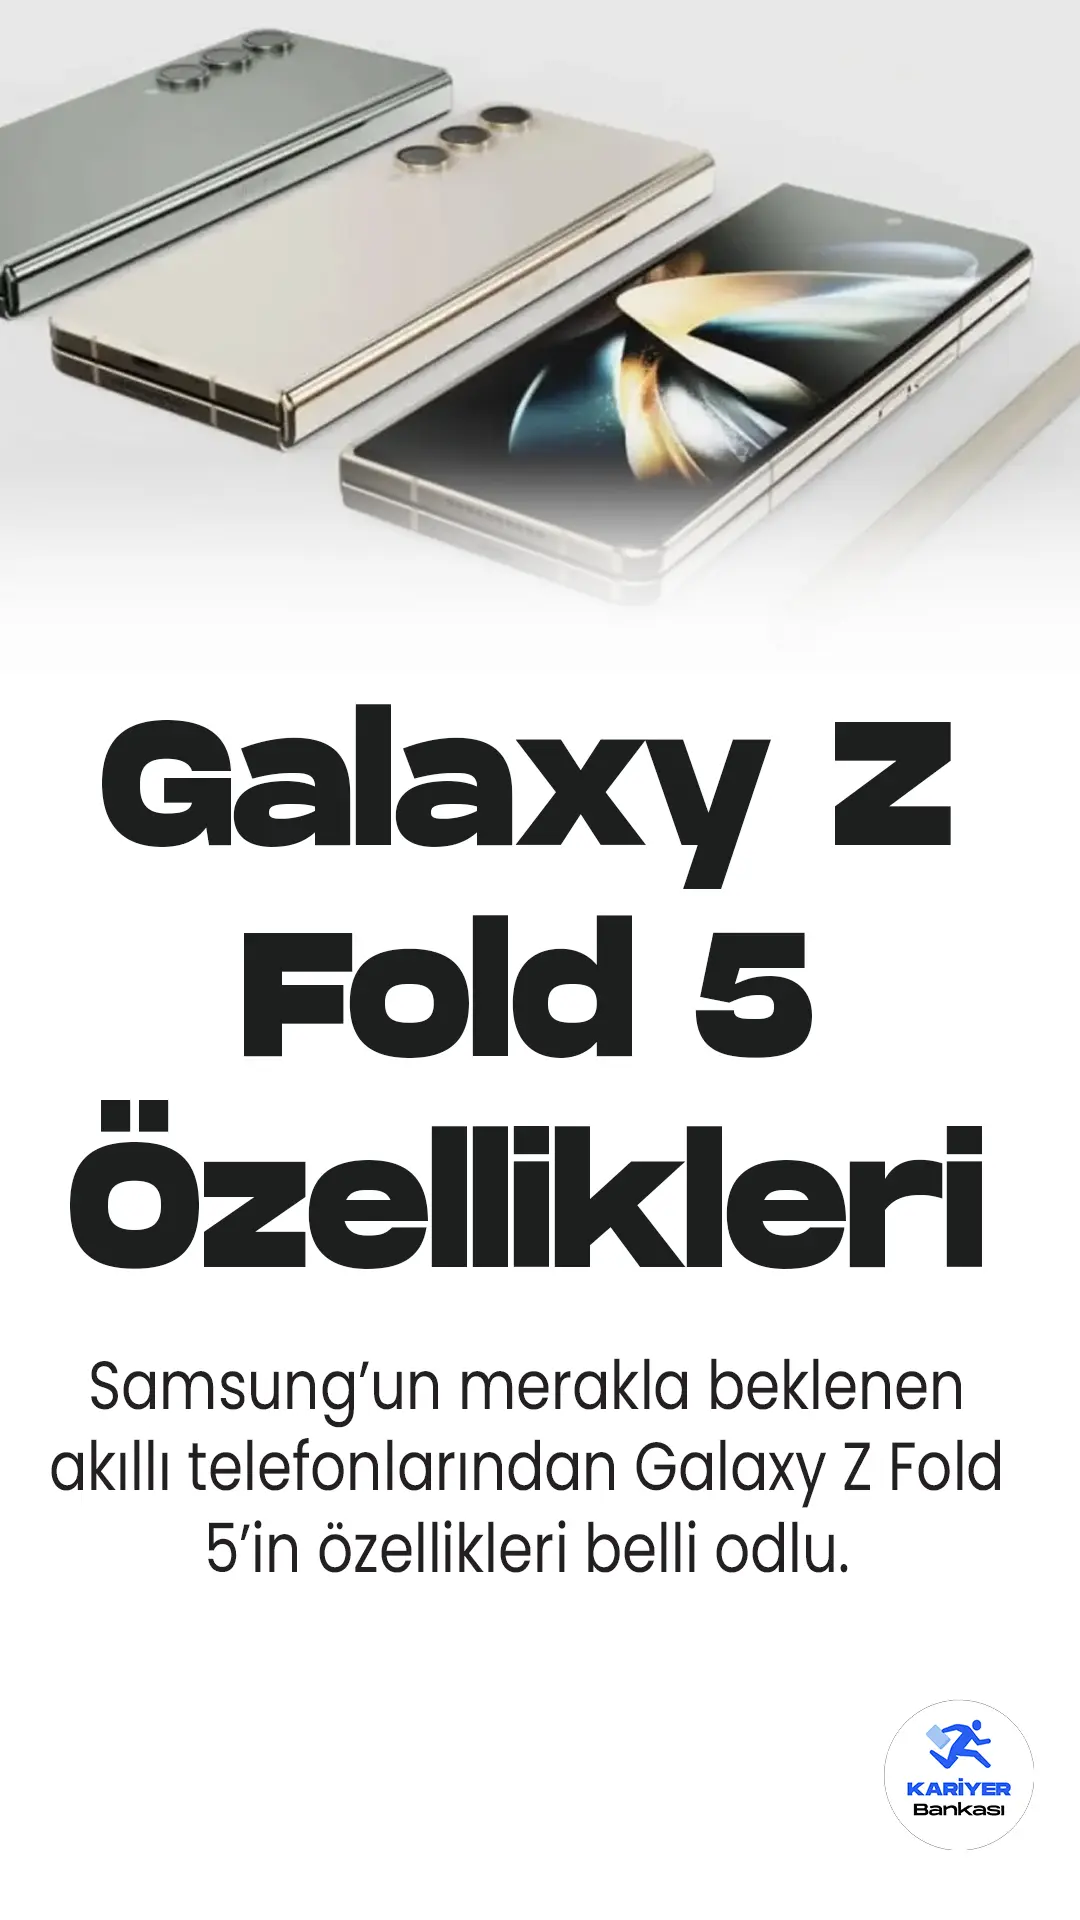 Galaxy Z Fold 5 özellikleri belli oldu. Telefonun ekran boyutları, yenileme hızı, kamerası, ve diğer özellikleri bu haberimizde...